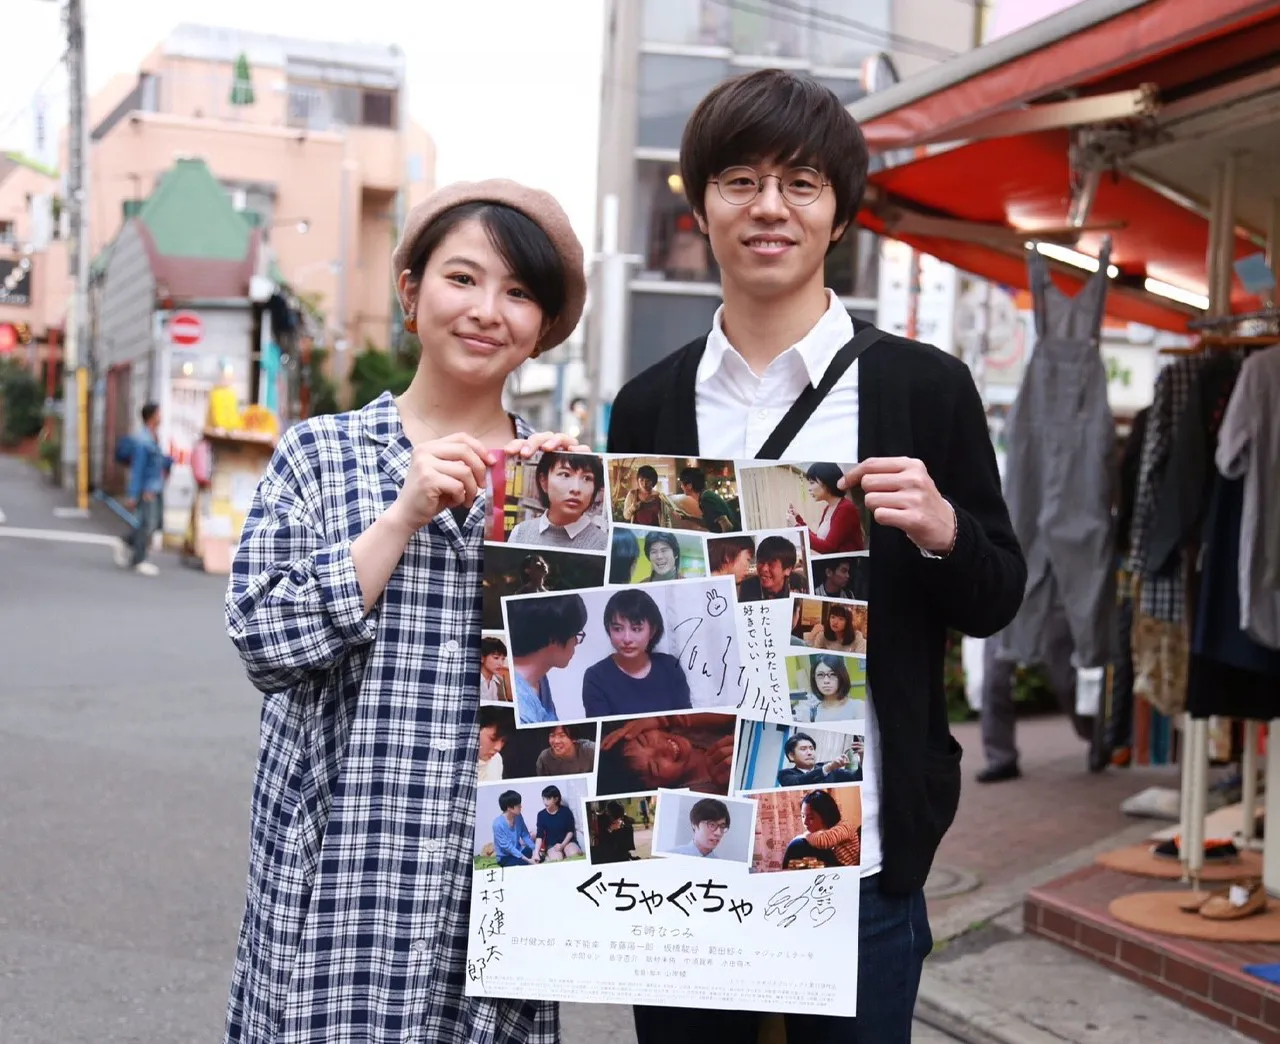 初主演を務めた石崎なつみと同僚役で出演した田村健太郎(写真左から)